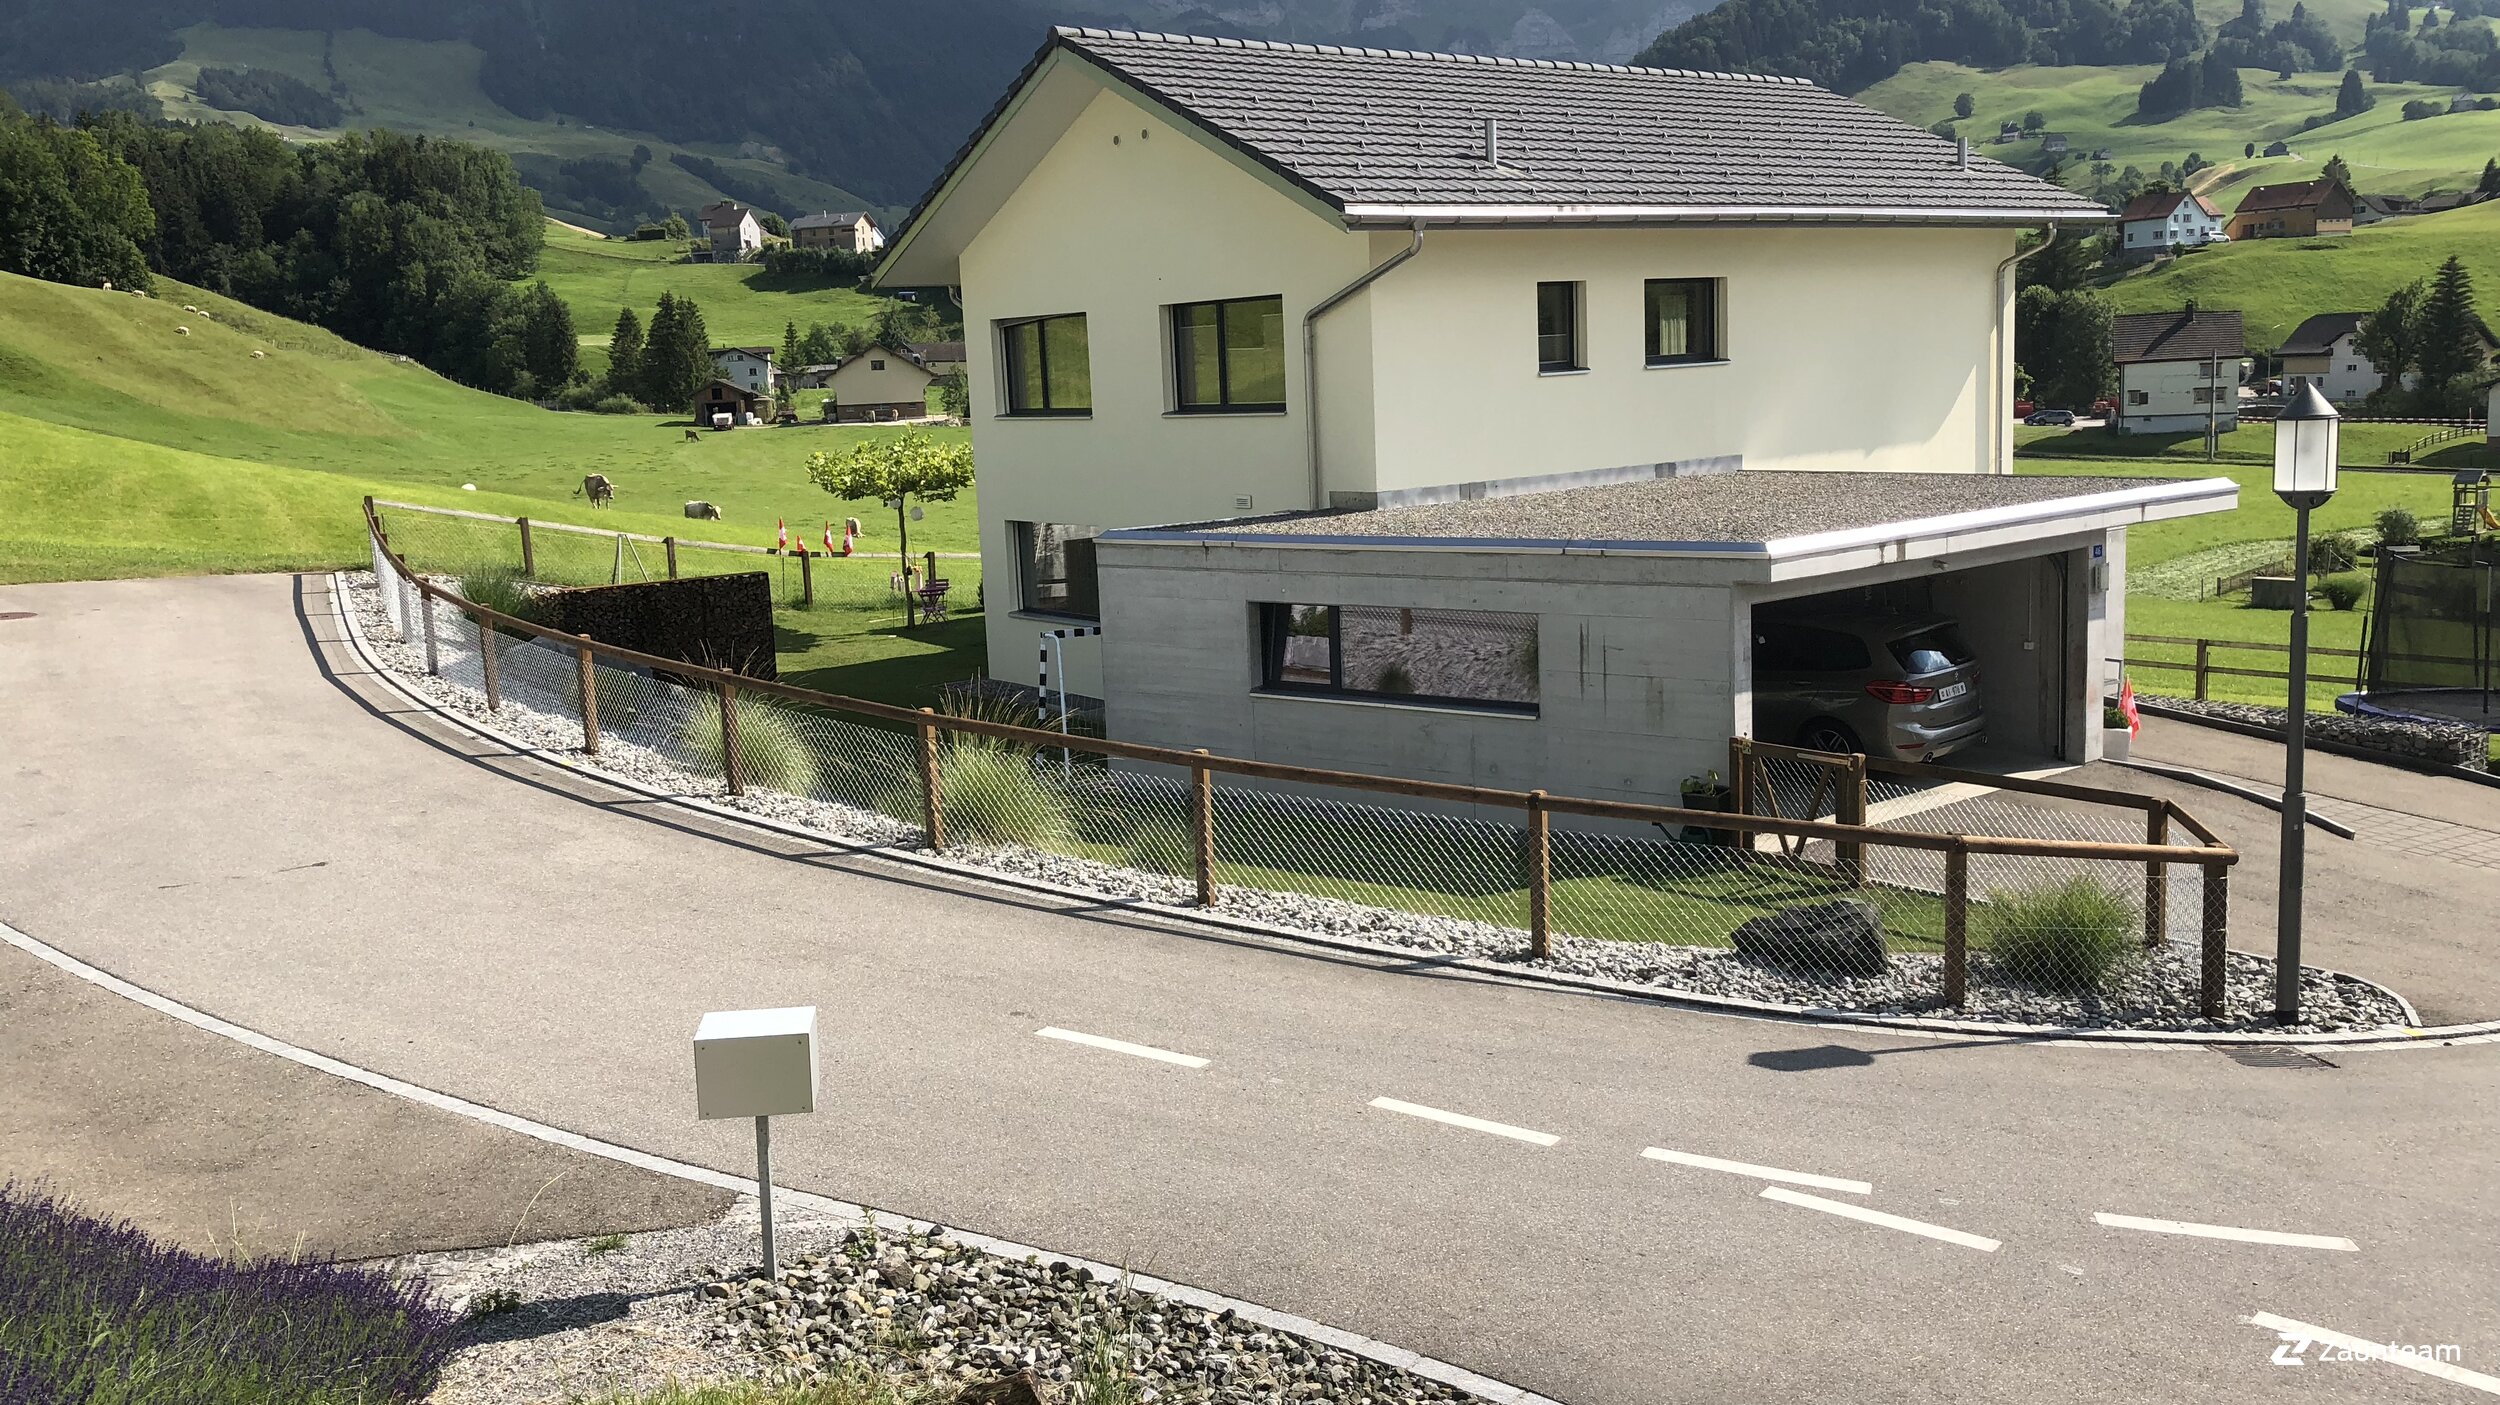 Clôture en lattes demi-rondes de 2018 à 9057 Weissbad  Schwende Suisse de Zaunteam Appenzellerland.